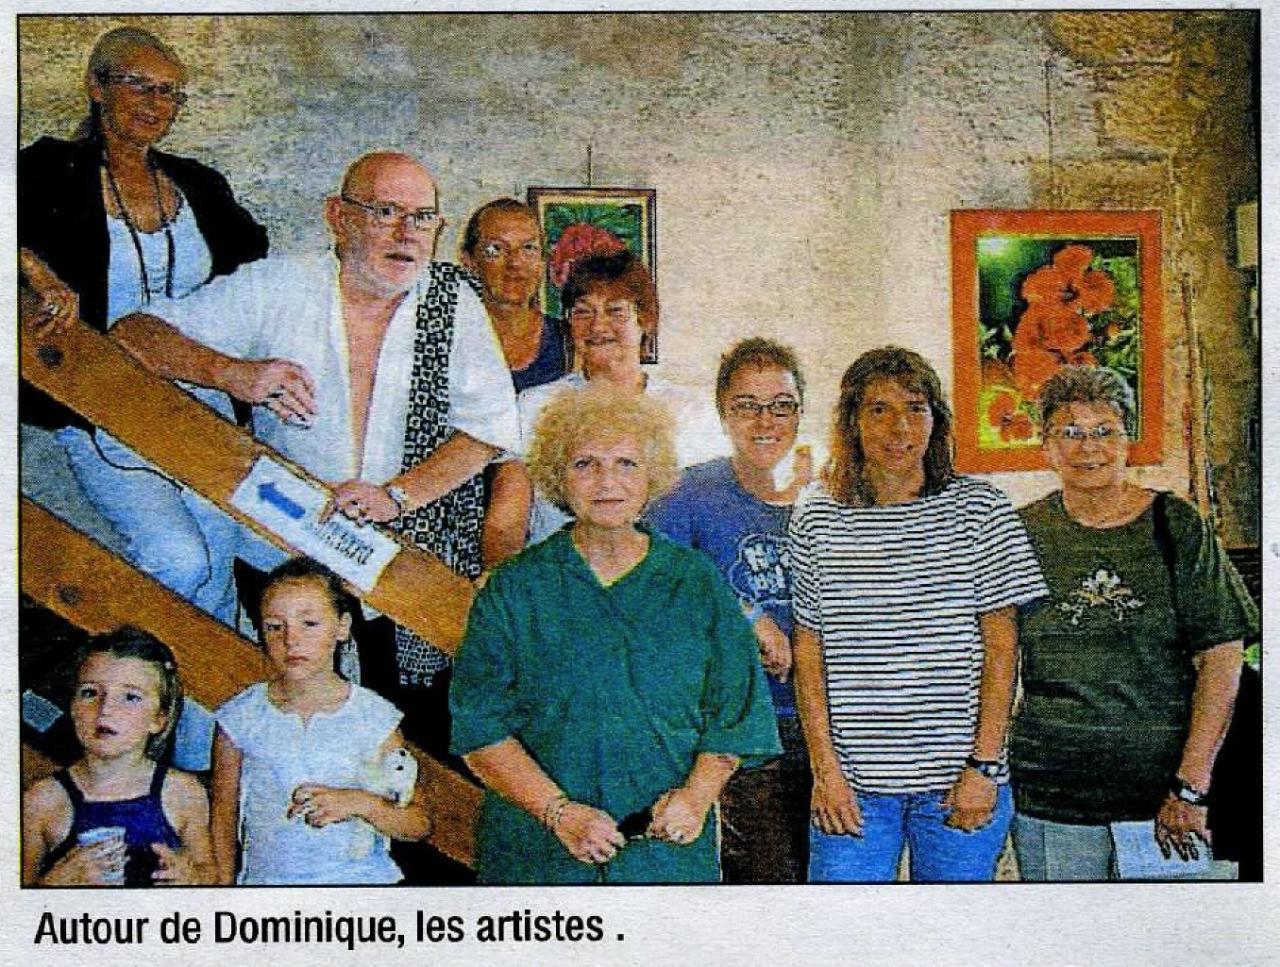 Les artistes autour de Dominique